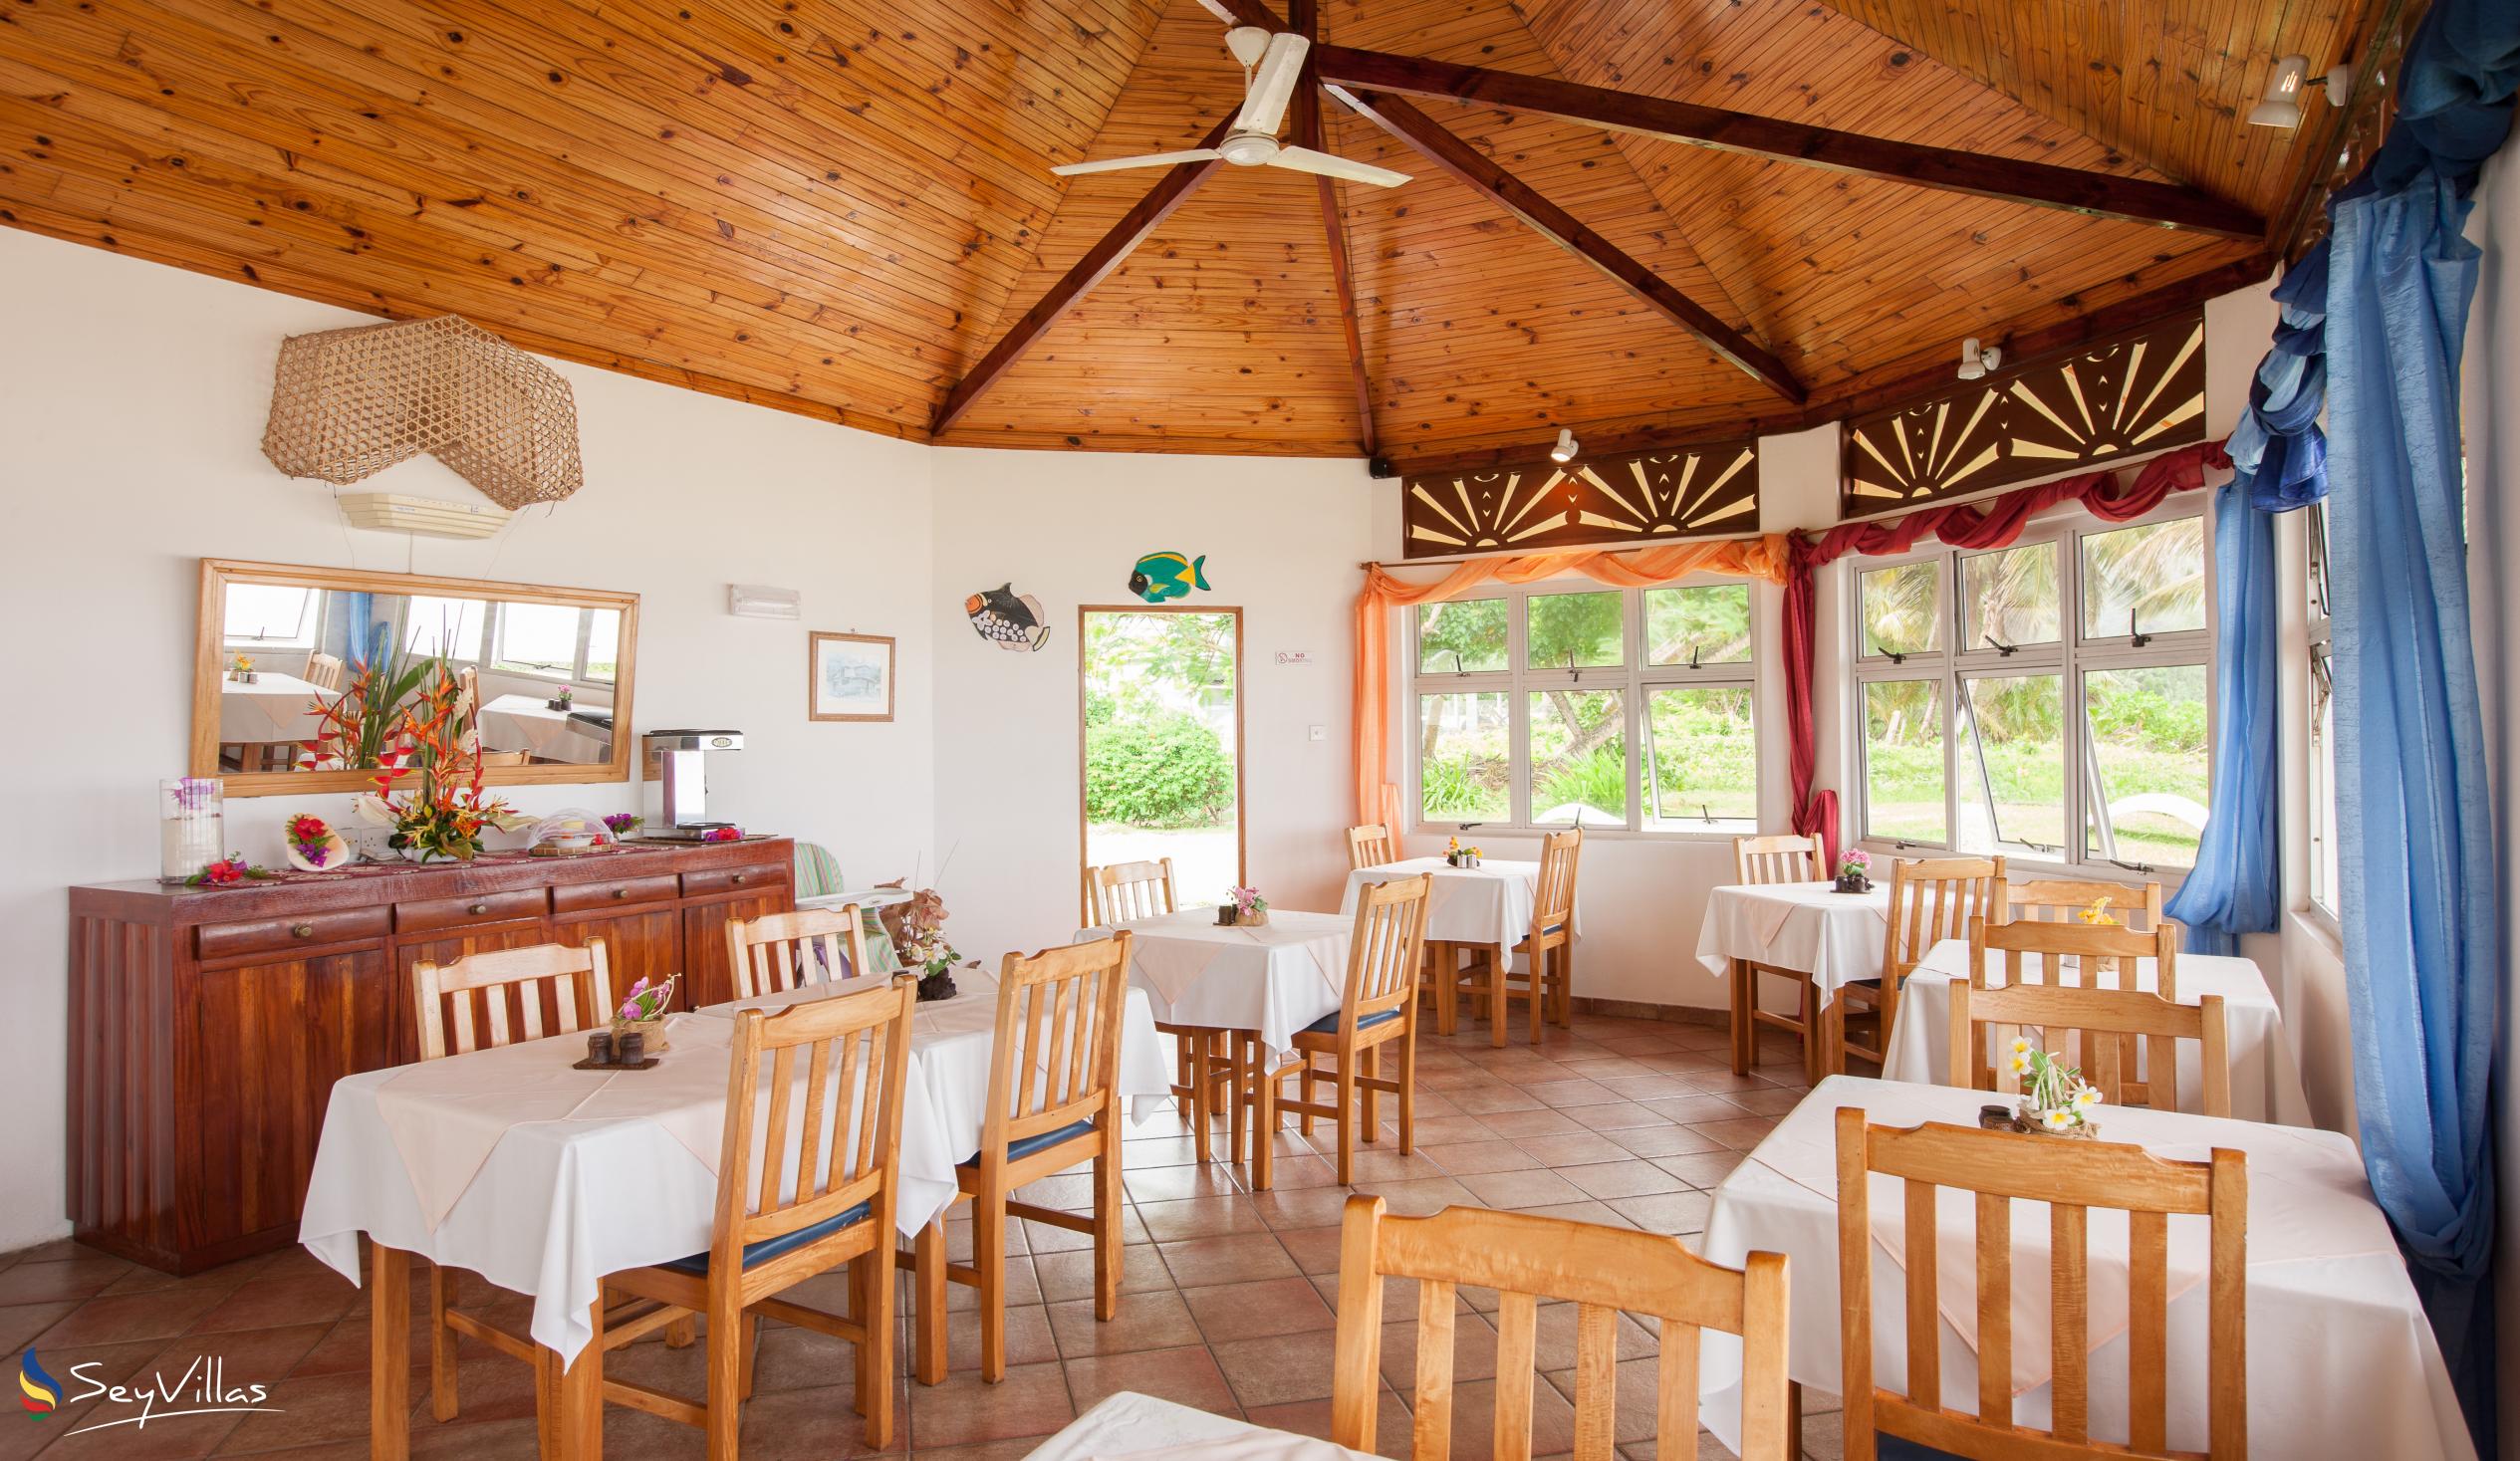 Foto 13: Beach Villa Guesthouse - Innenbereich - Praslin (Seychellen)